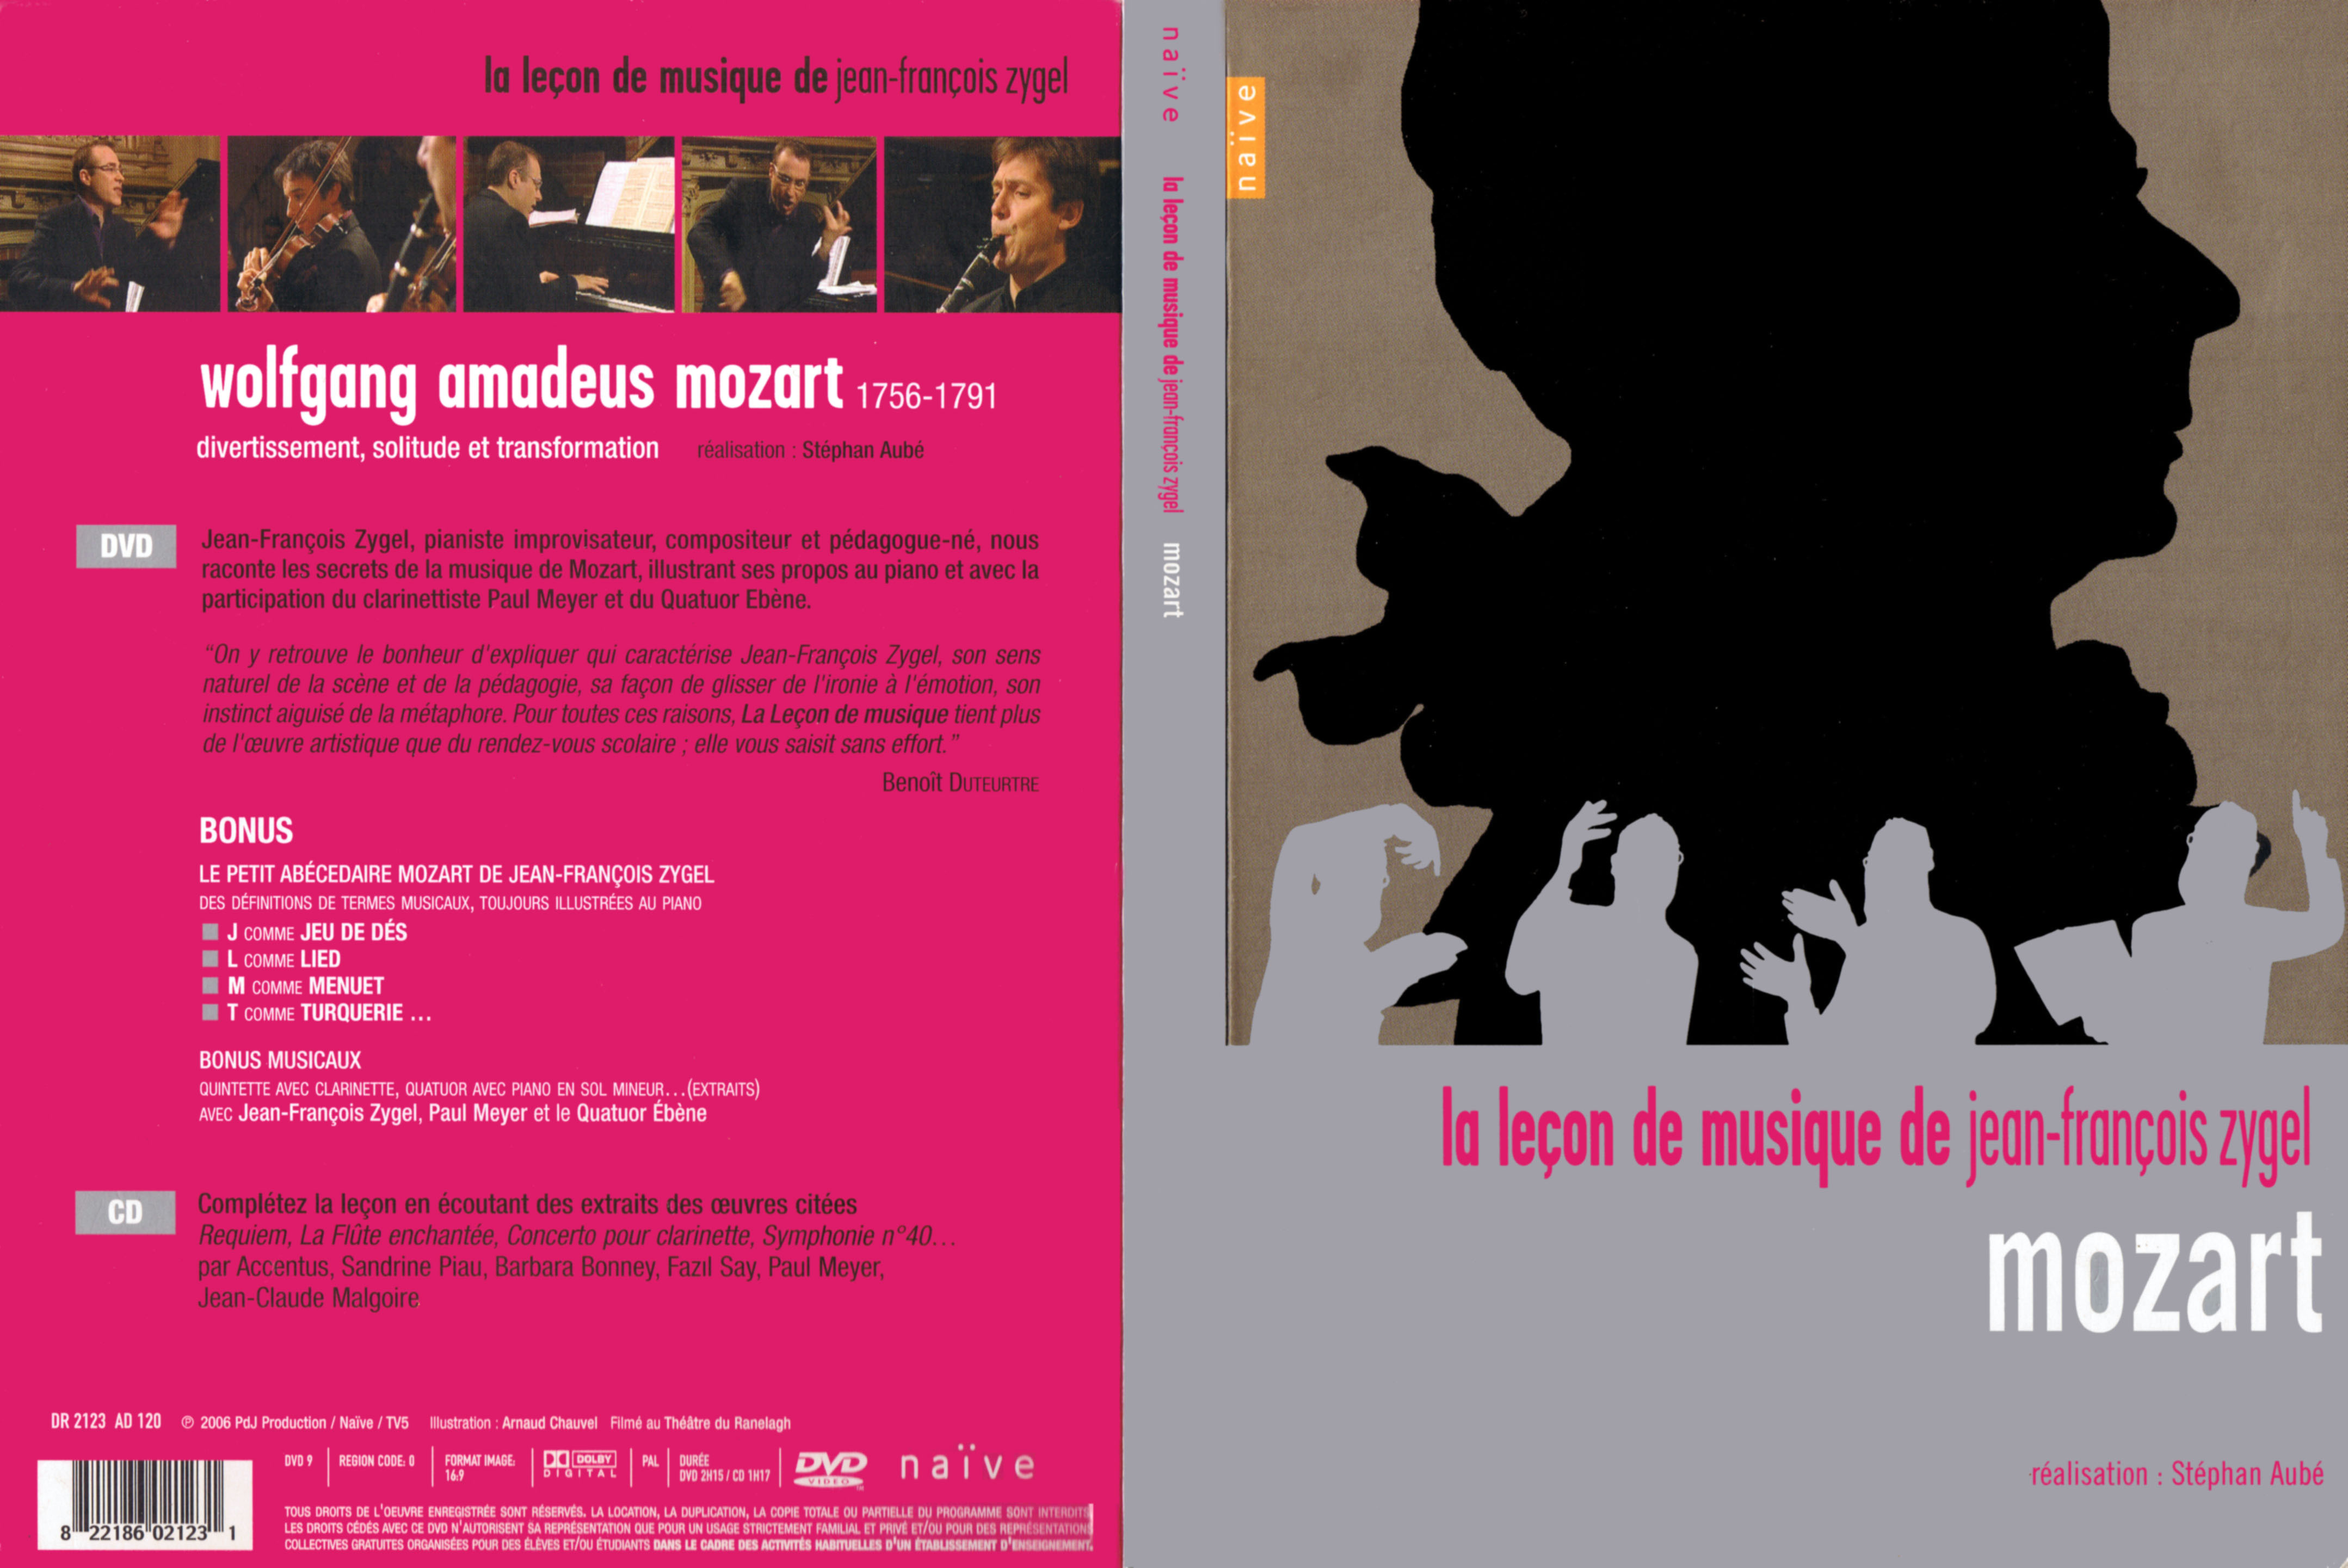 Jaquette DVD La lecon de musique de Jean-Francois Zygel - Mozart